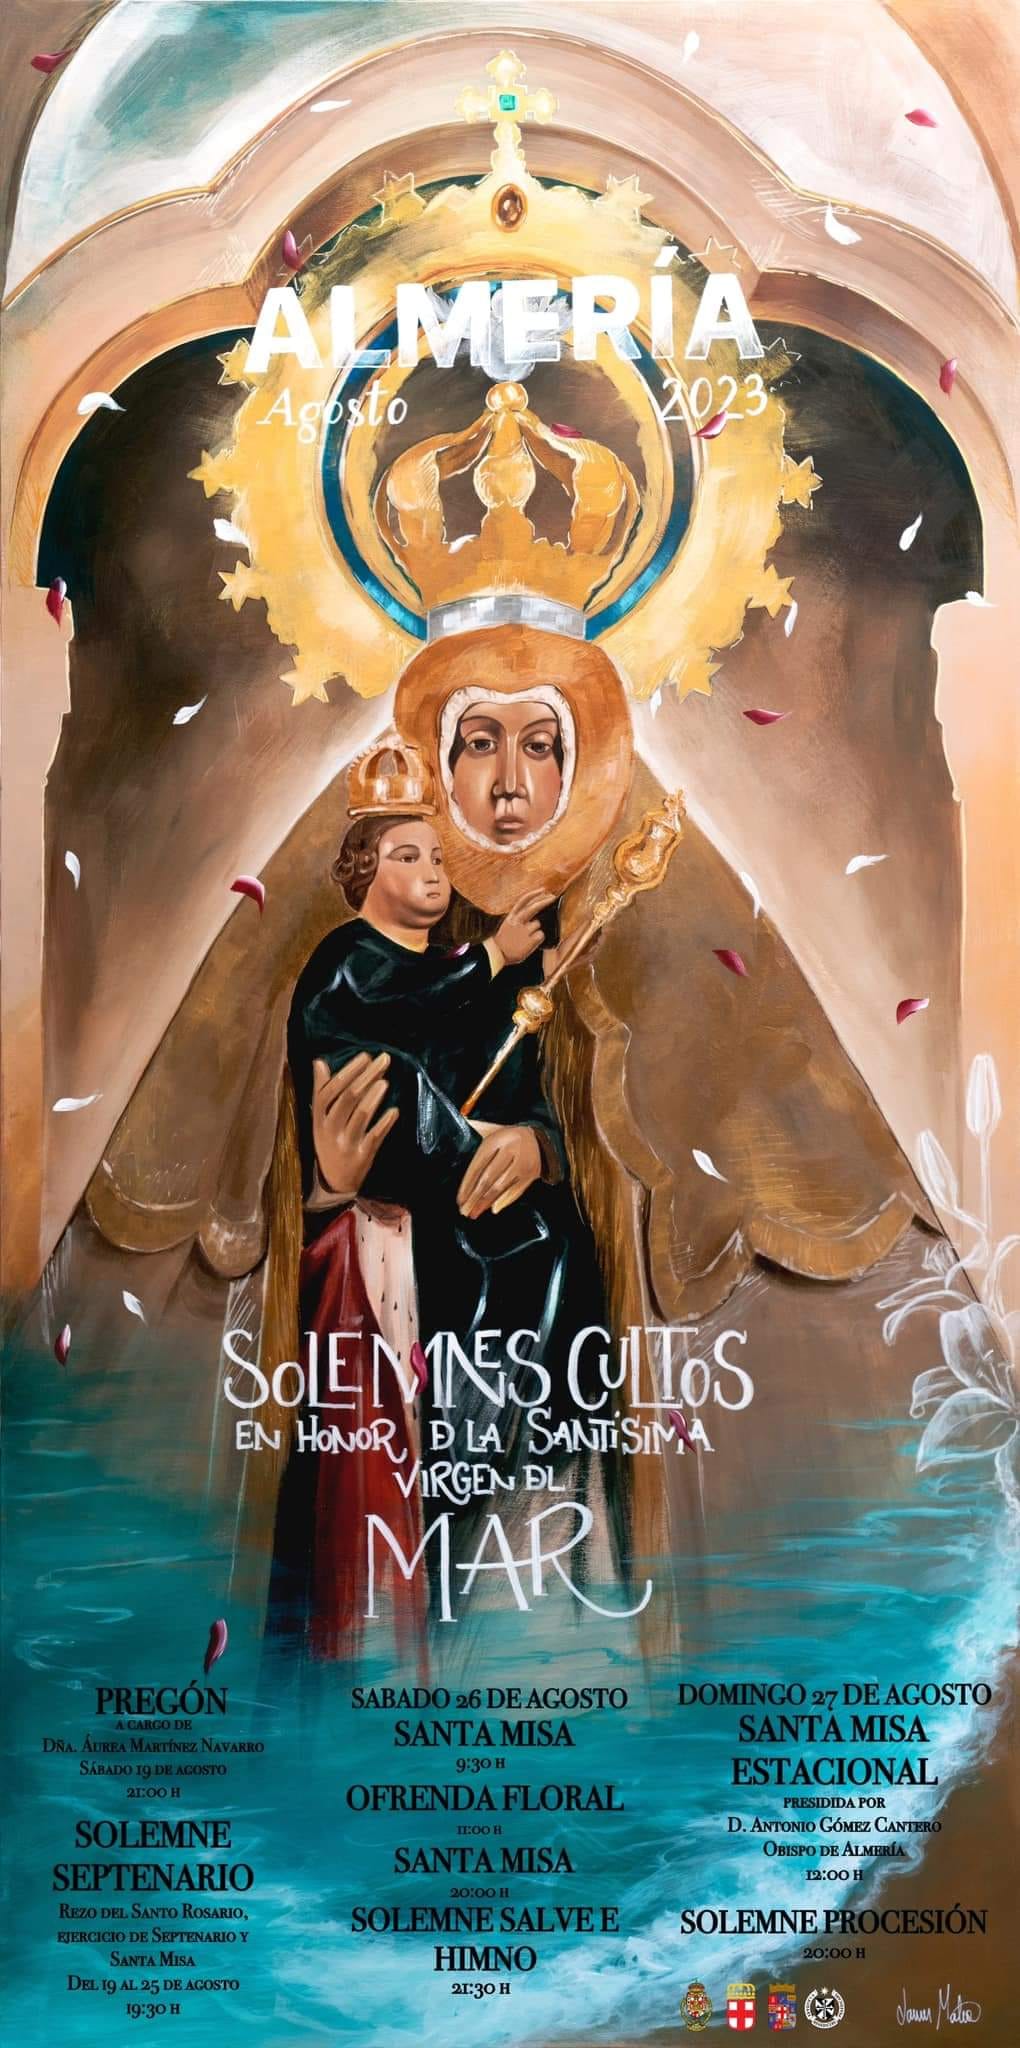 Solemnes Cultos en honor de la santísima Virgen del Mar